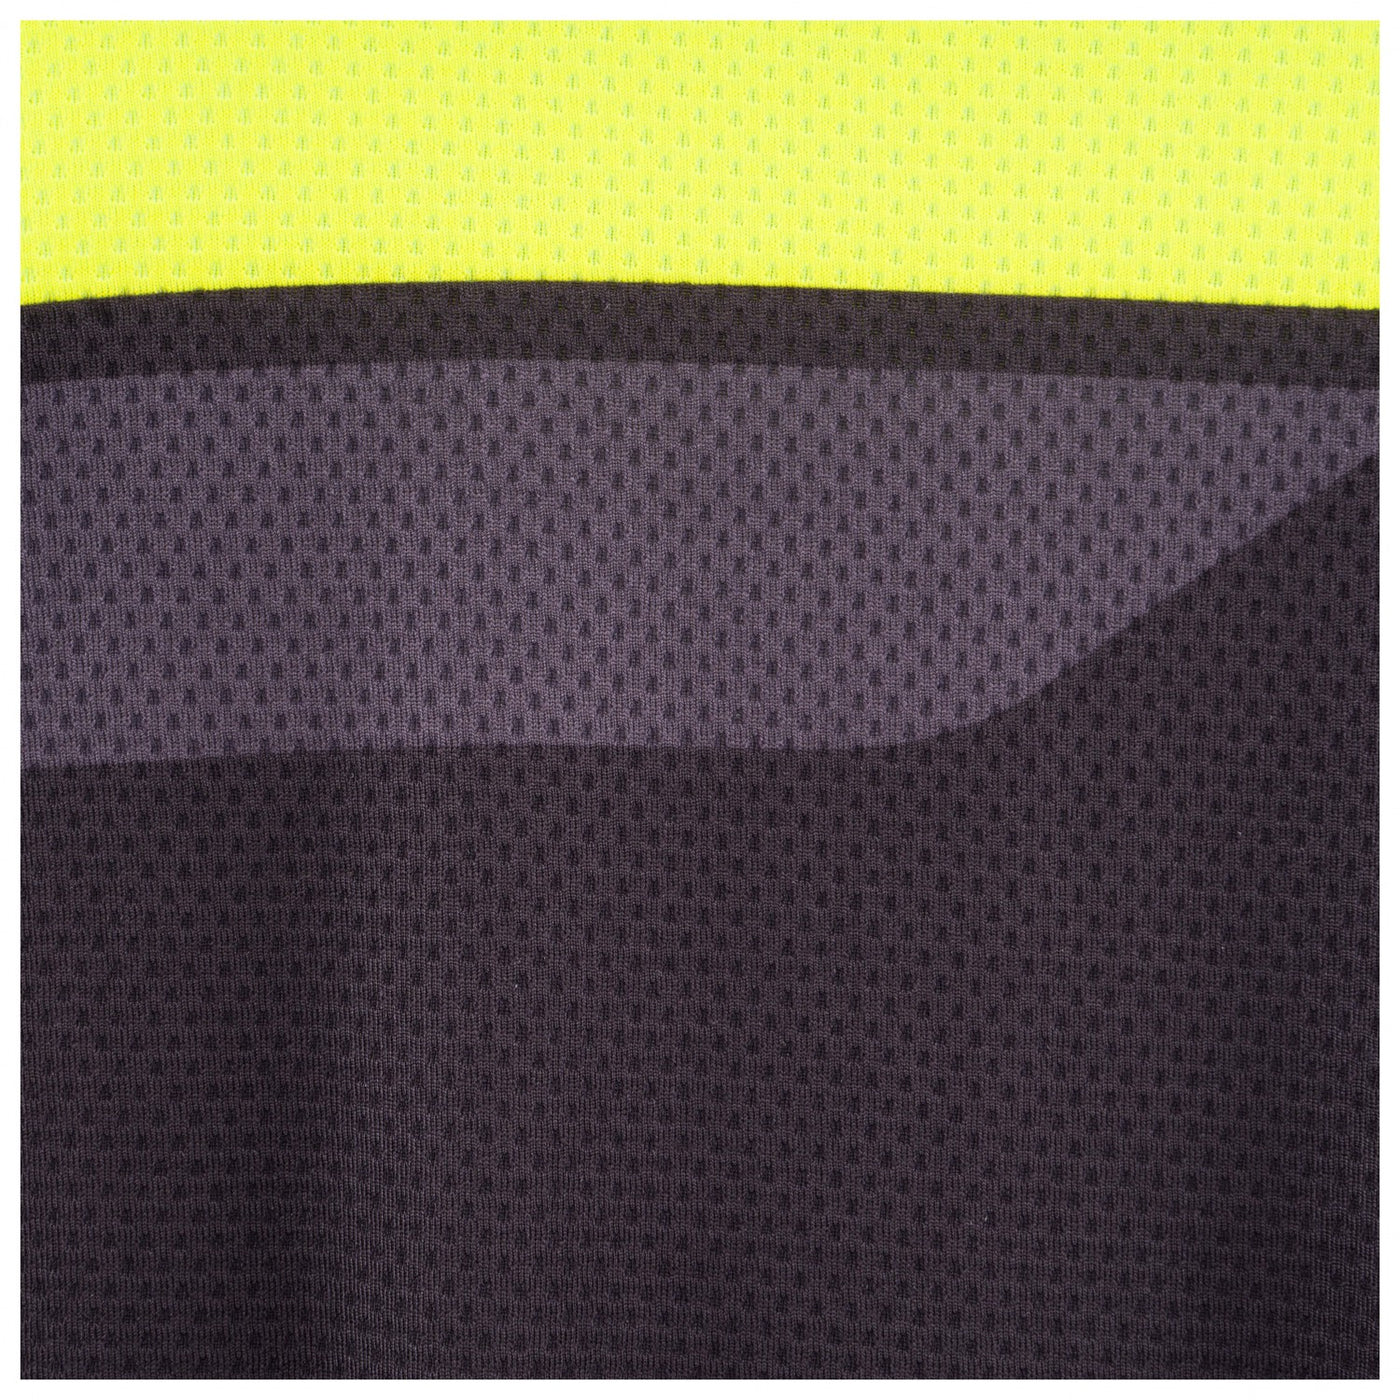 Bioracer Team Men's Jersey 2.0 - Black/Fluo Yellow - Cyclop.in